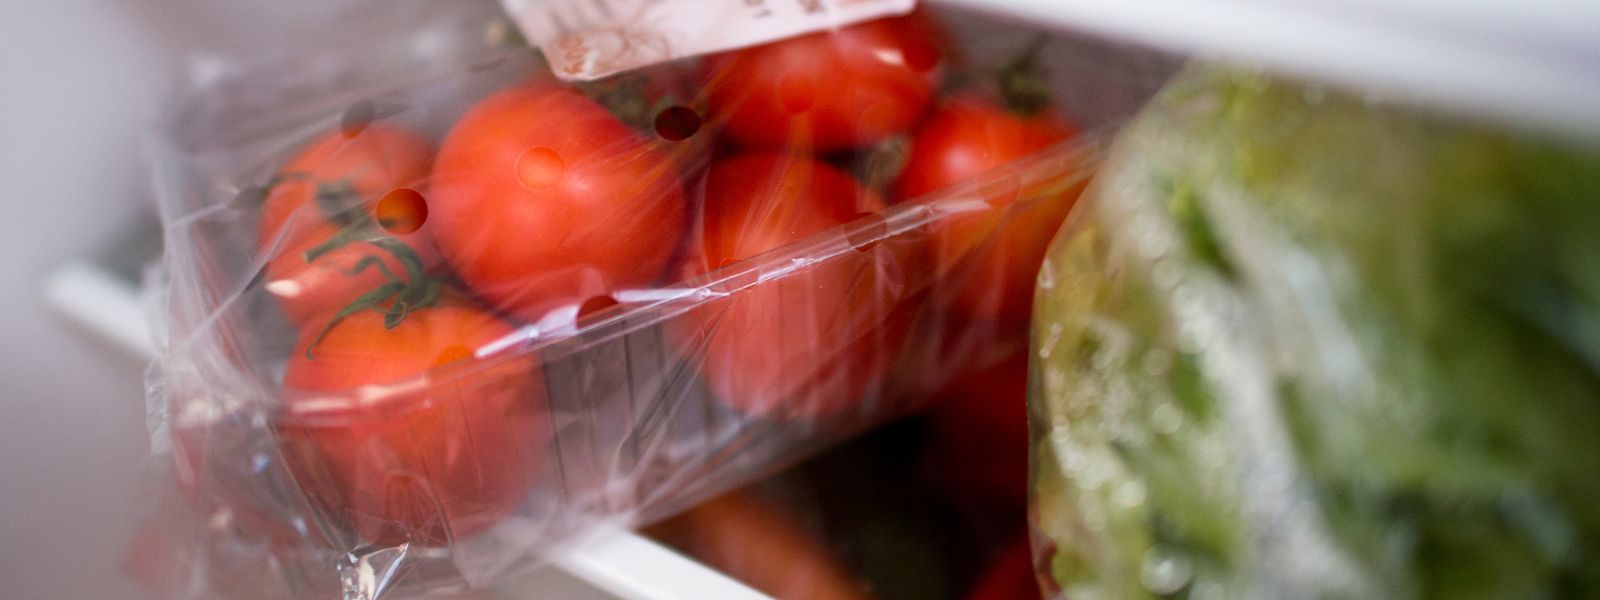 Mit der neuen Gesetzgebung wird den Plastikverpackungen bei Gemüse und Obst der Kampf angesagt. 